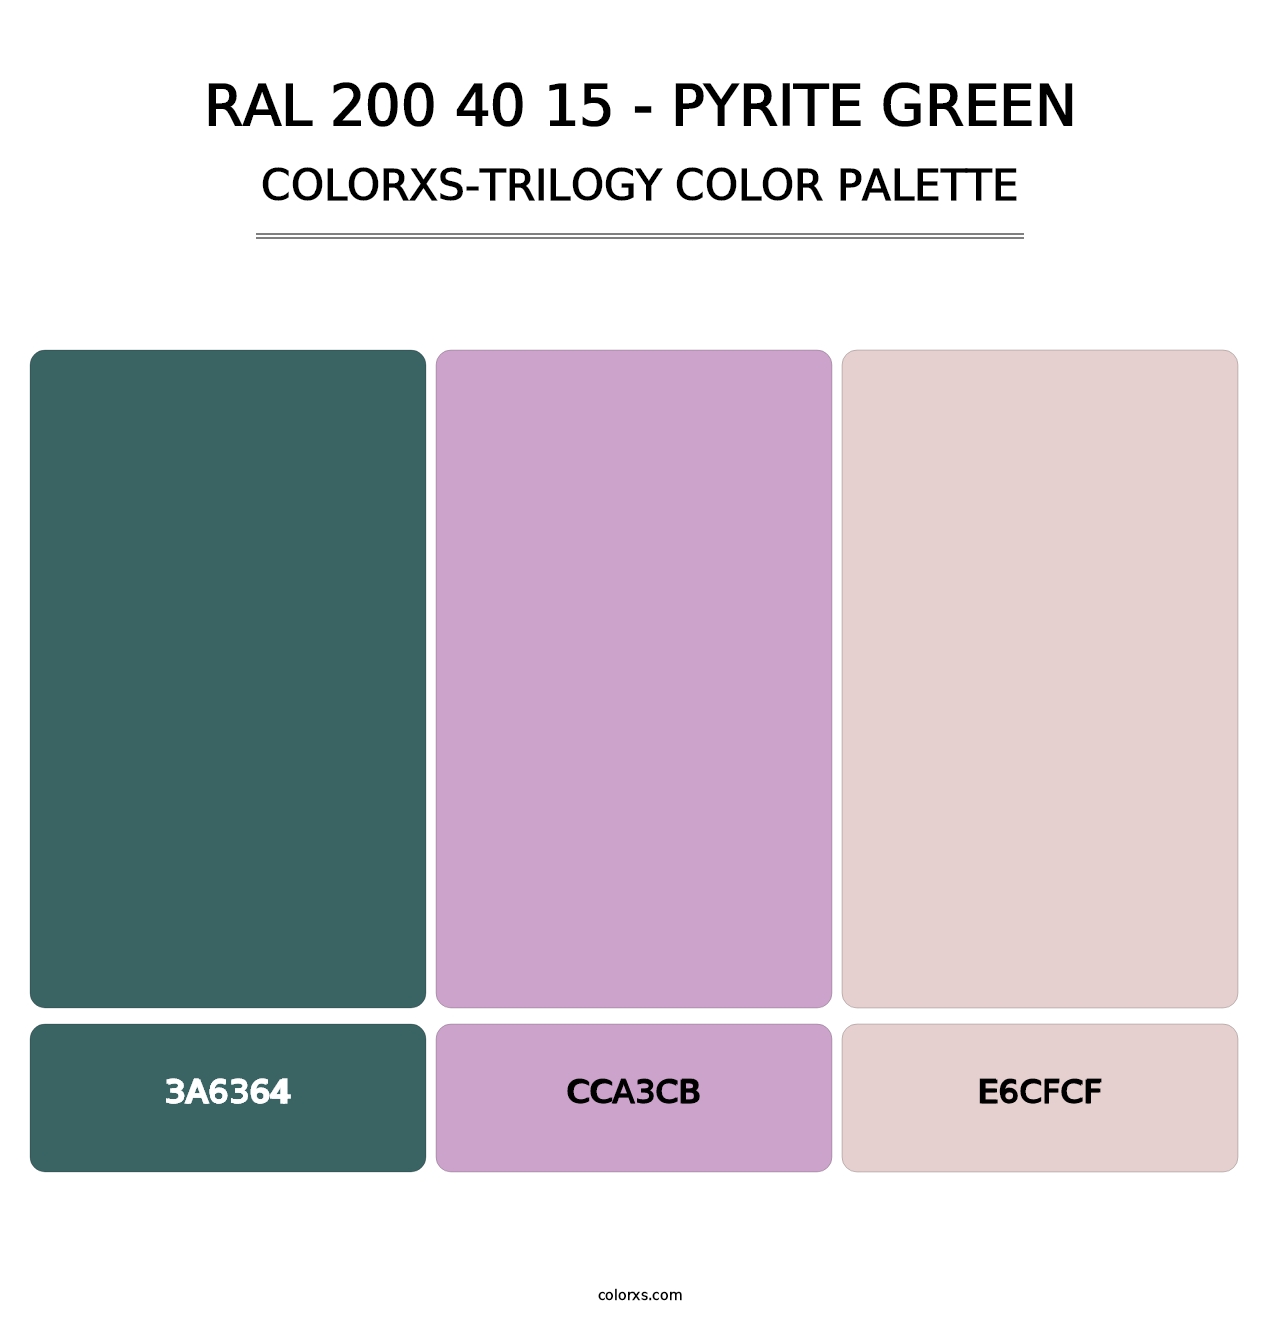 RAL 200 40 15 - Pyrite Green - Colorxs Trilogy Palette